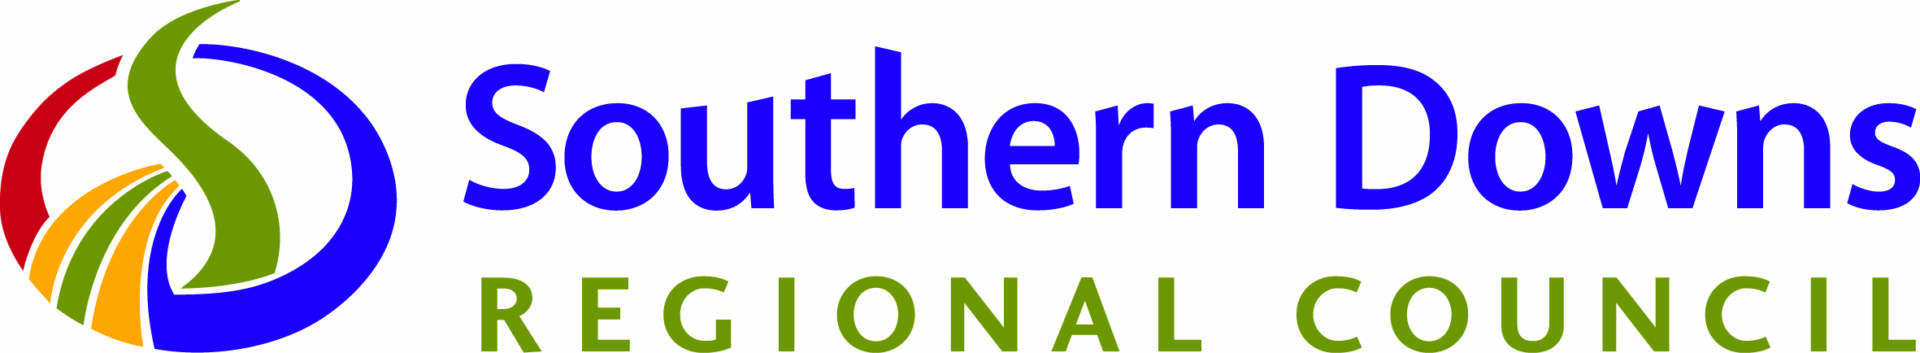 Southern Down Council logo